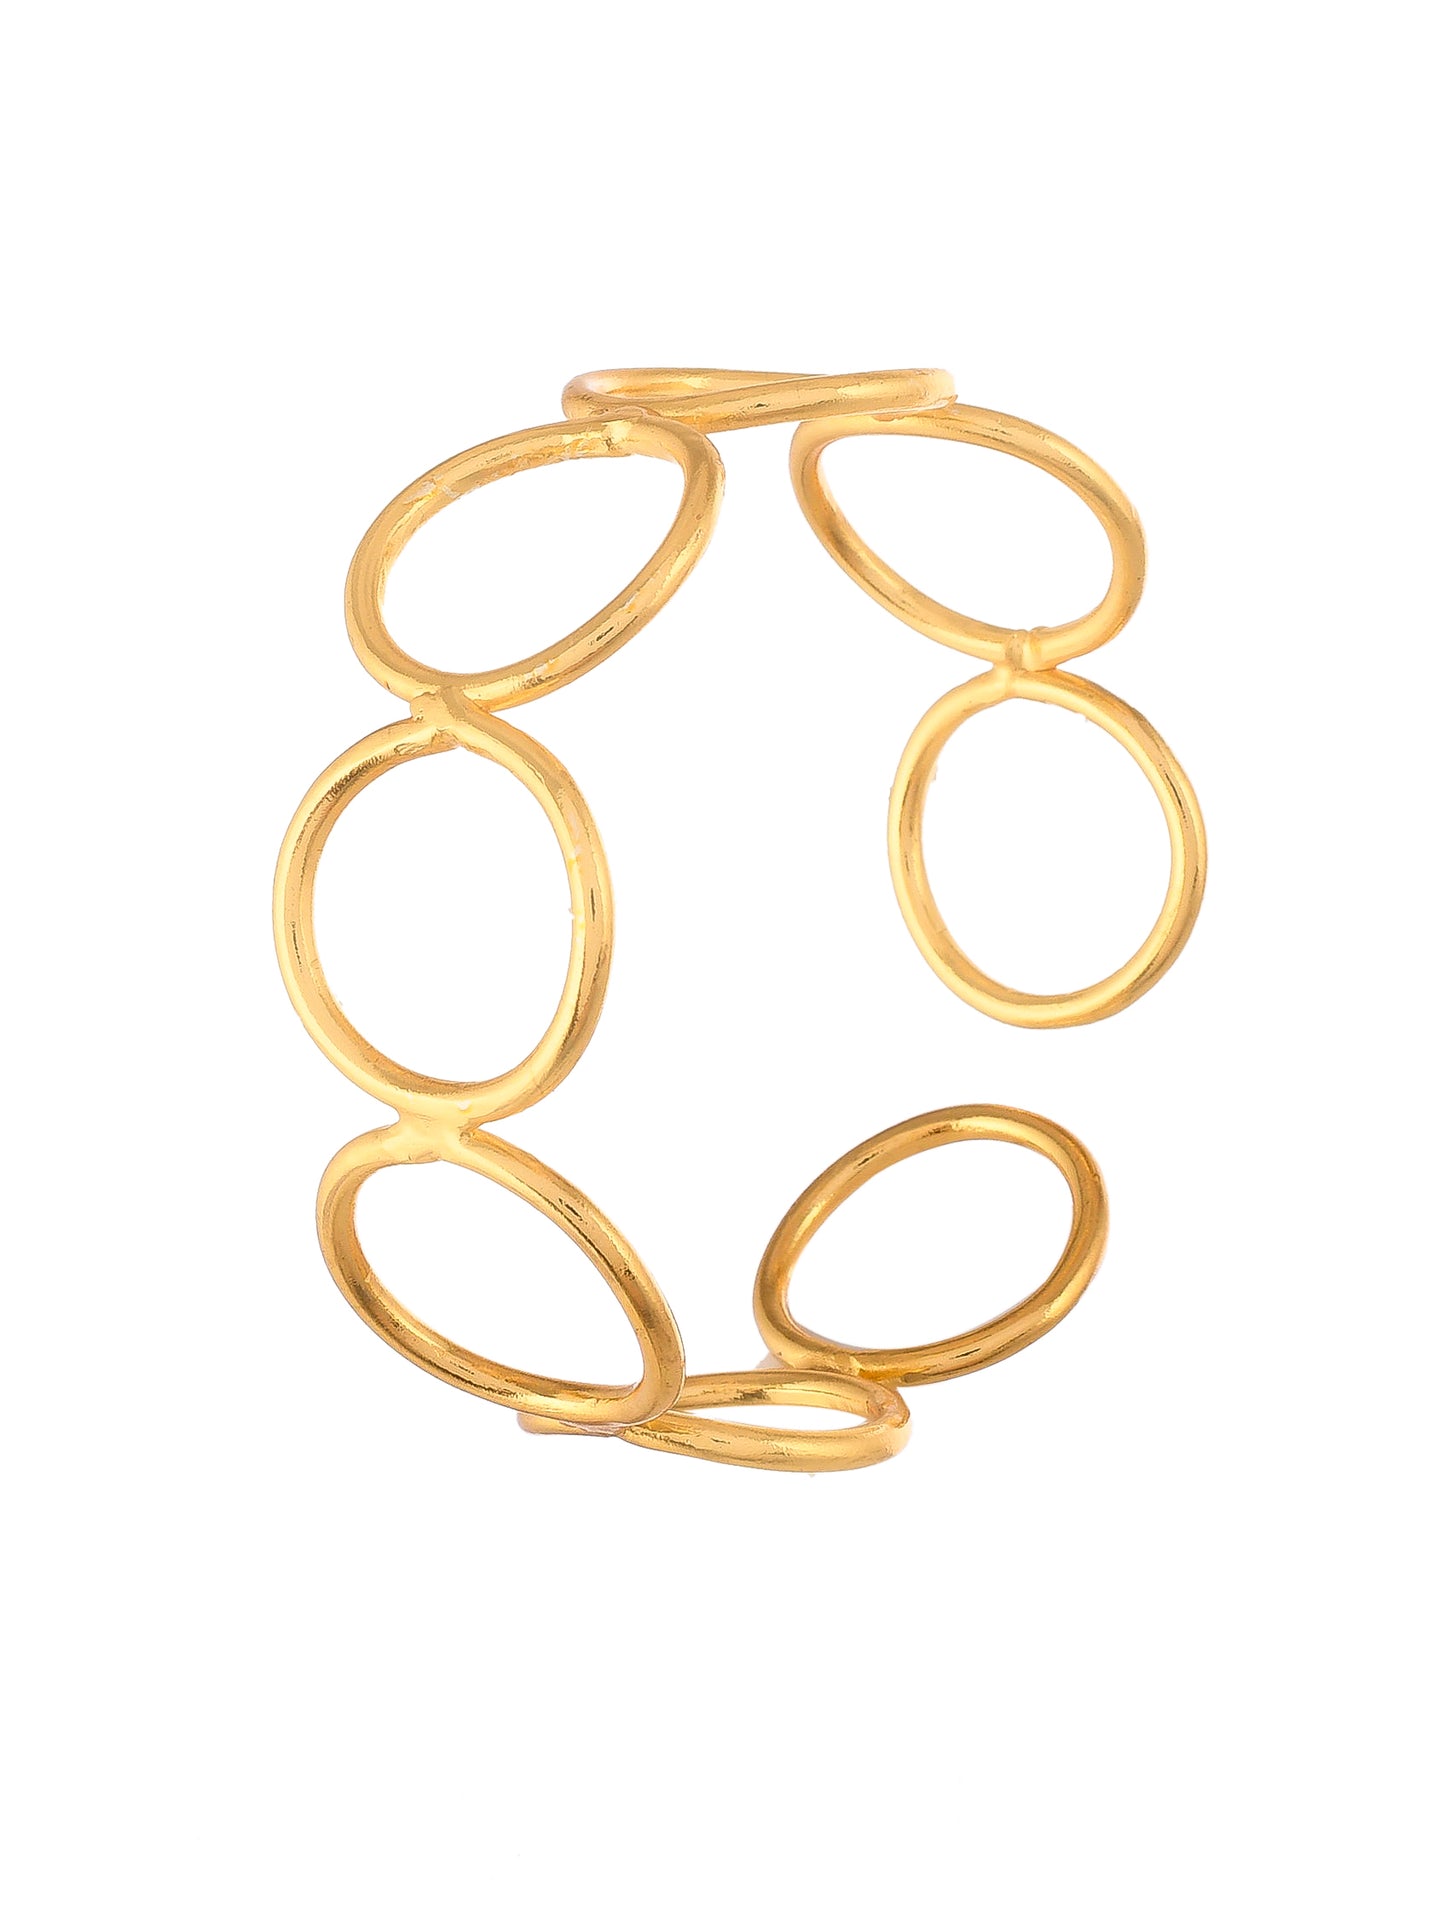 Spiral Gold plated Bracelet